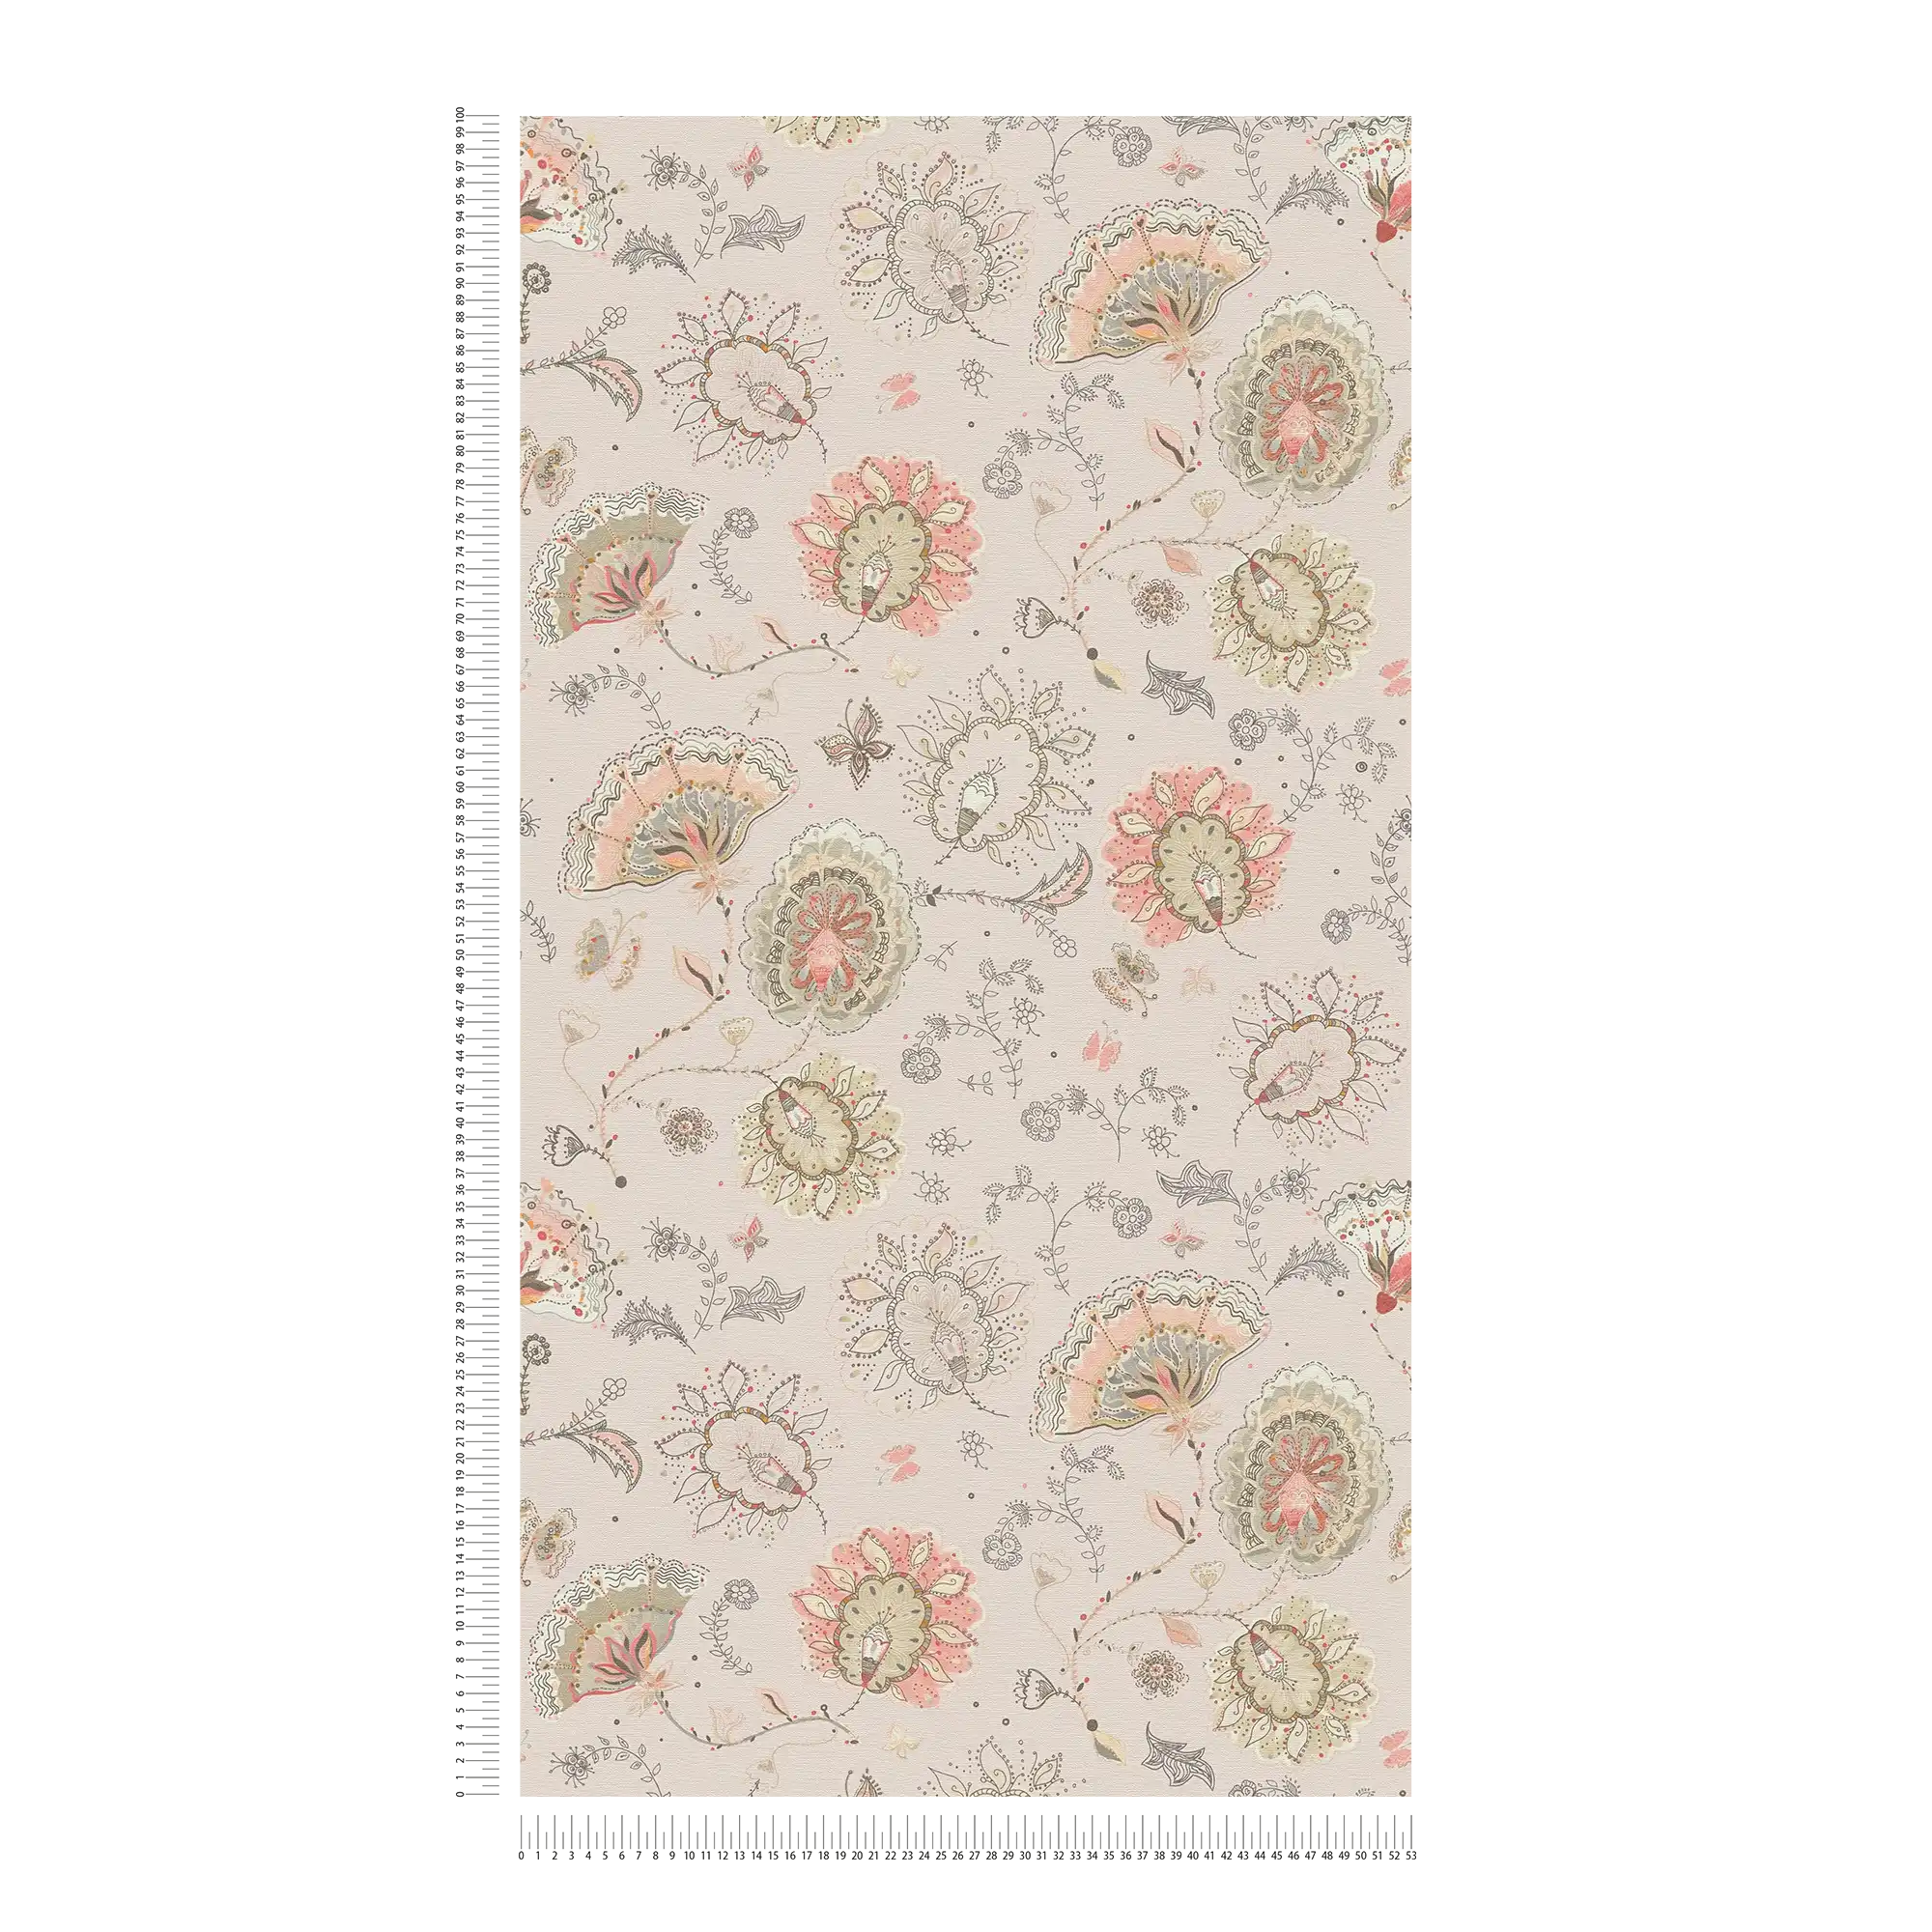             Carta da parati floreale con motivo floreale astratto e struttura fine - grigio, beige, rosso
        